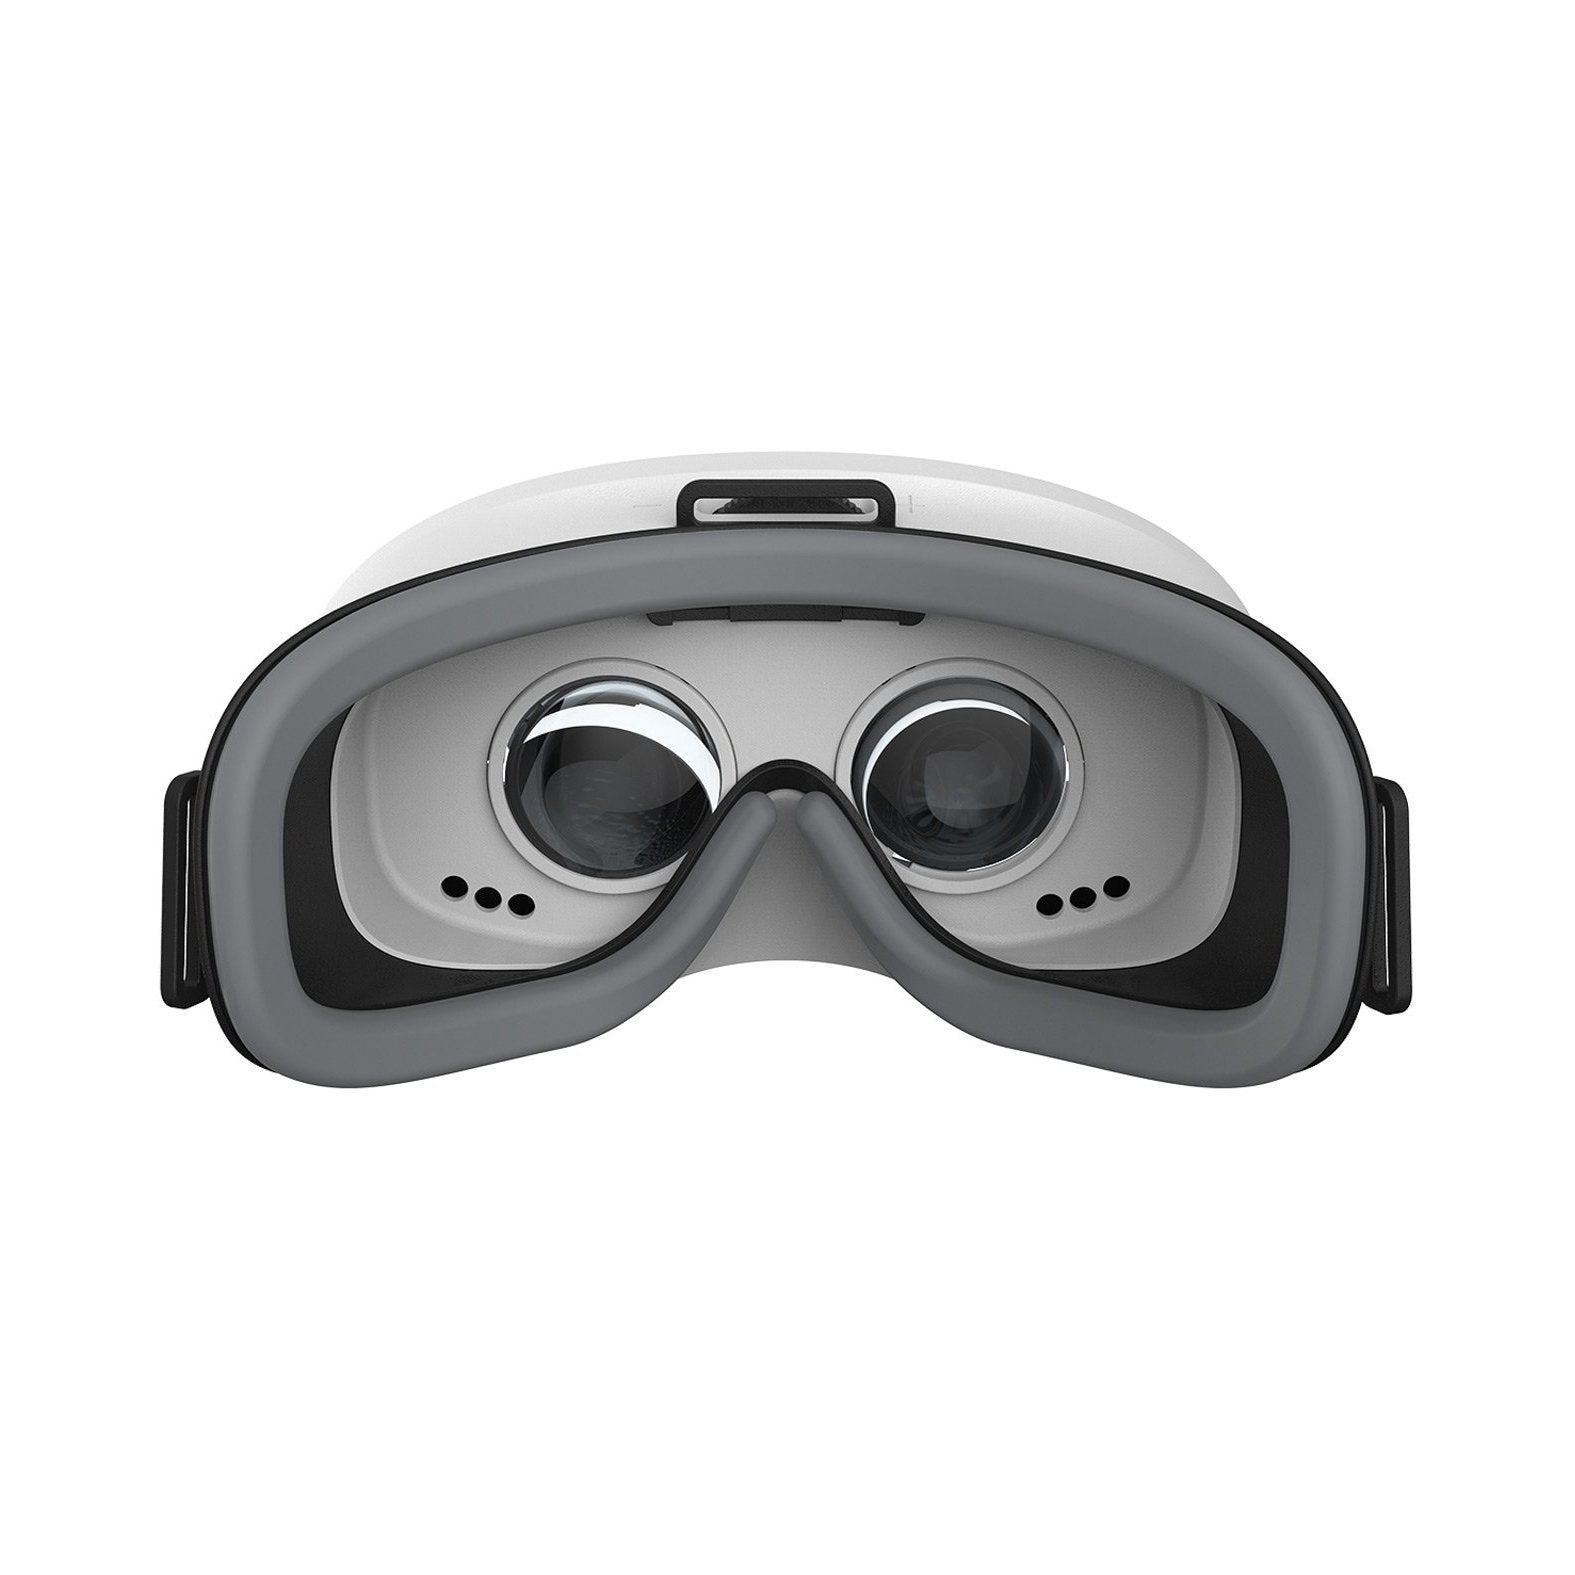 SenseMax Sense VR Headset